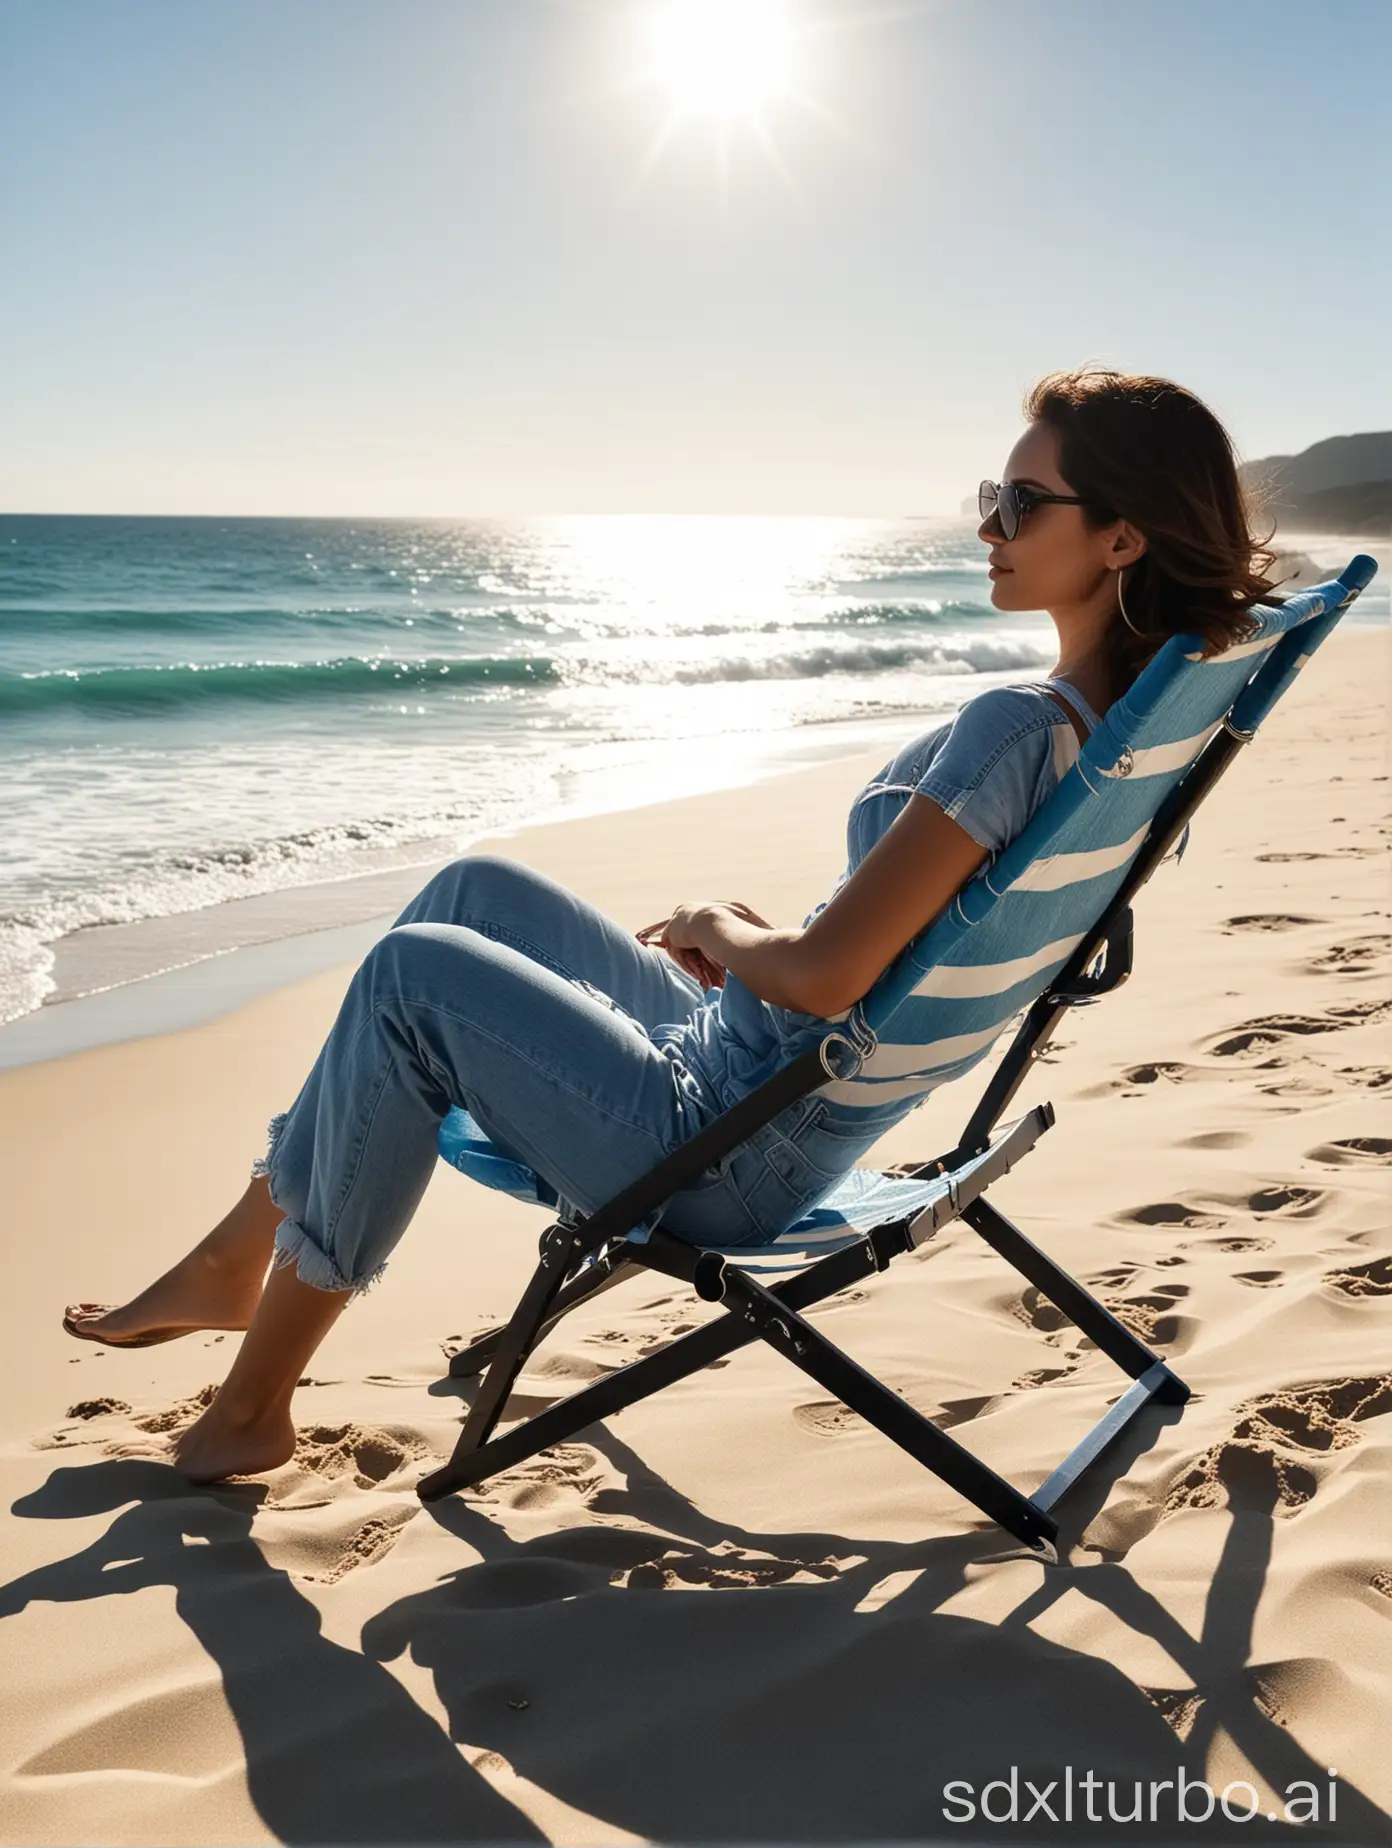 布是纯蓝色的沙滩椅，不是蓝白相间的，椅子背对着我们，沙滩椅的框架是黑色的，美女坐在椅子上，美女带着太阳眼镜，背景有海洋有阳光